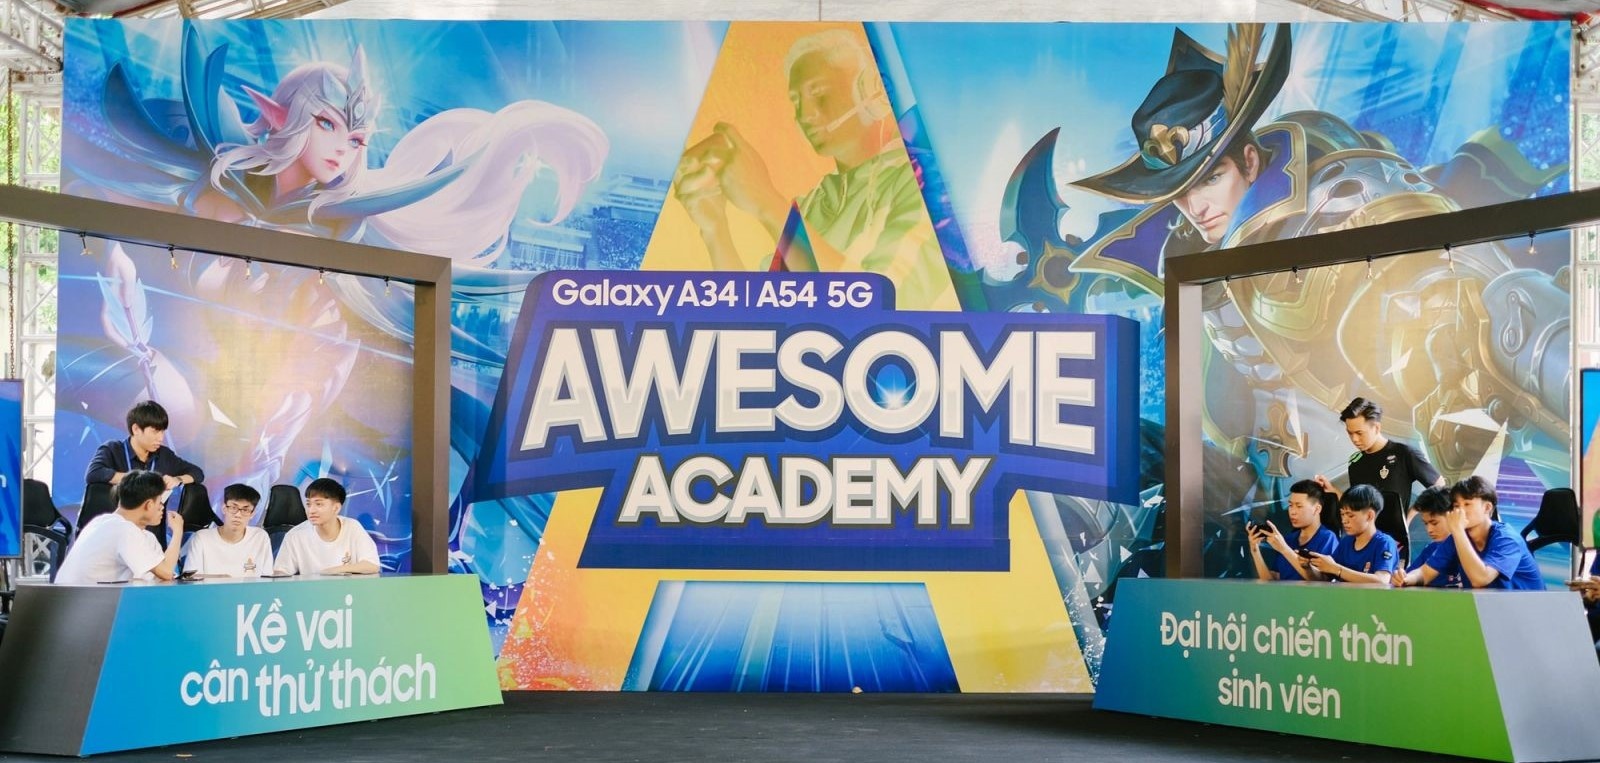 3 mùa Awesome Academy cùng Gen Z biến đam mê thành sự nghiệp - ảnh 2